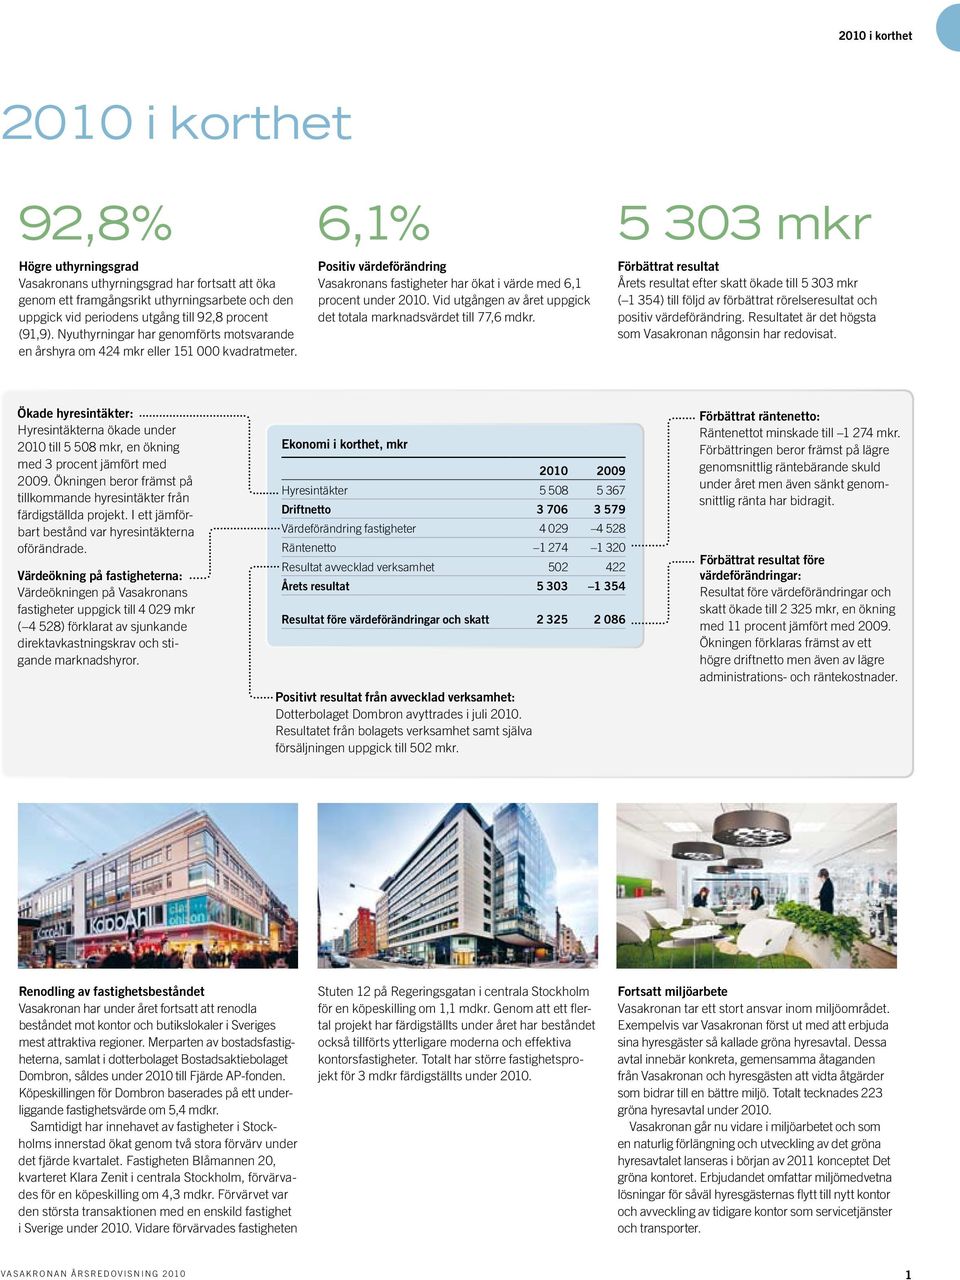 6,1% Positiv värdeförändring Vasakronans fastigheter har ökat i värde med 6,1 procent under 2010. Vid utgången av året uppgick det totala marknadsvärdet till 77,6 mdkr.